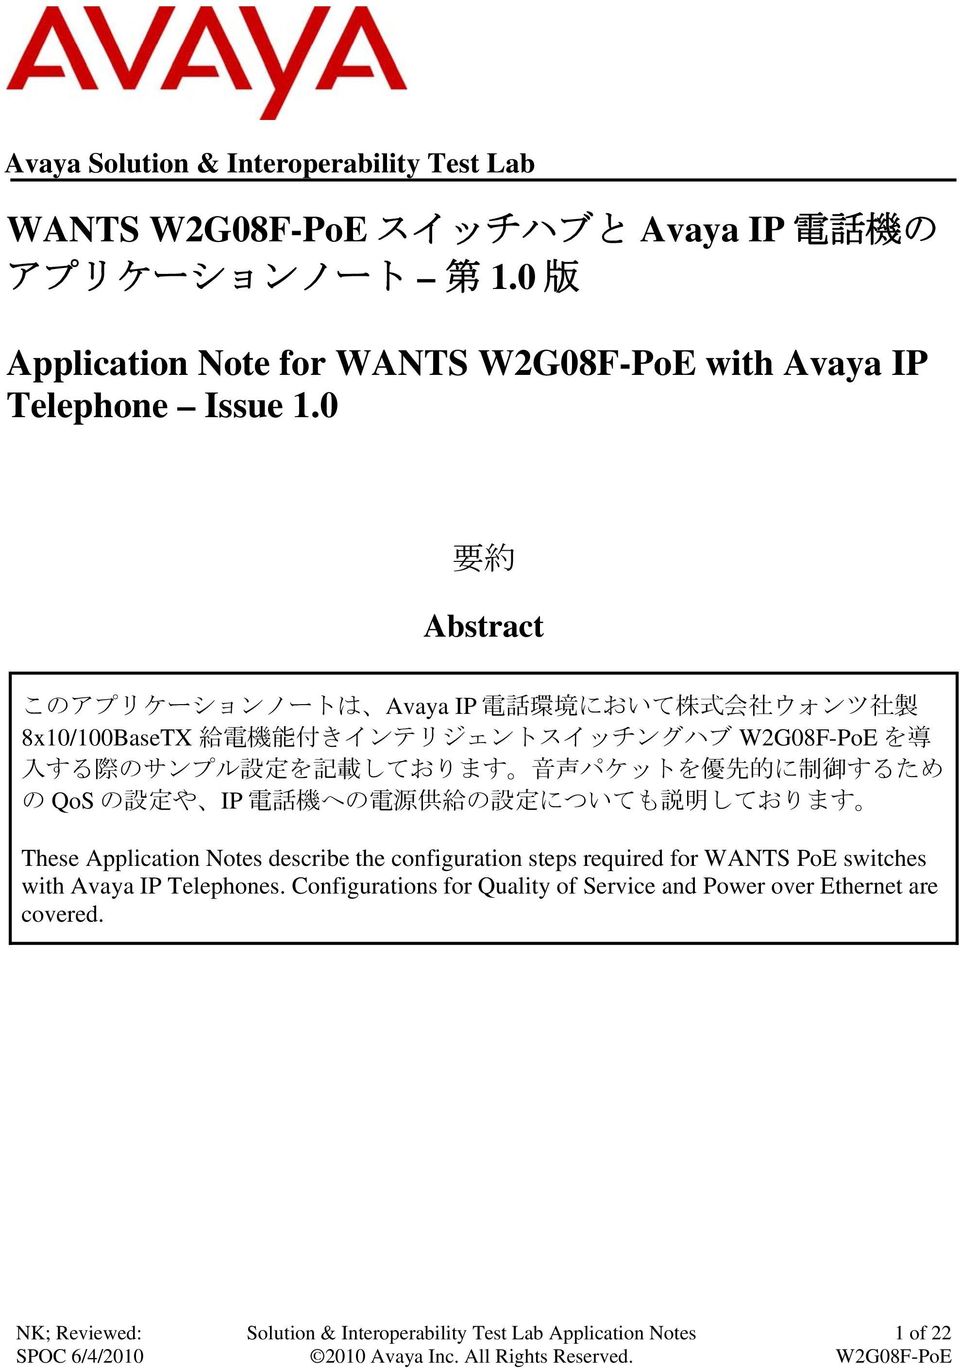 0 要 約 Abstract このアプリケーションノートは Avaya IP 電 話 環 境 において 株 式 会 社 ウォンツ 社 製 8x10/100BaseTX 給 電 機 能 付 きインテリジェントスイッチングハブ を 導 入 する 際 のサンプル 設 定 を 記 載